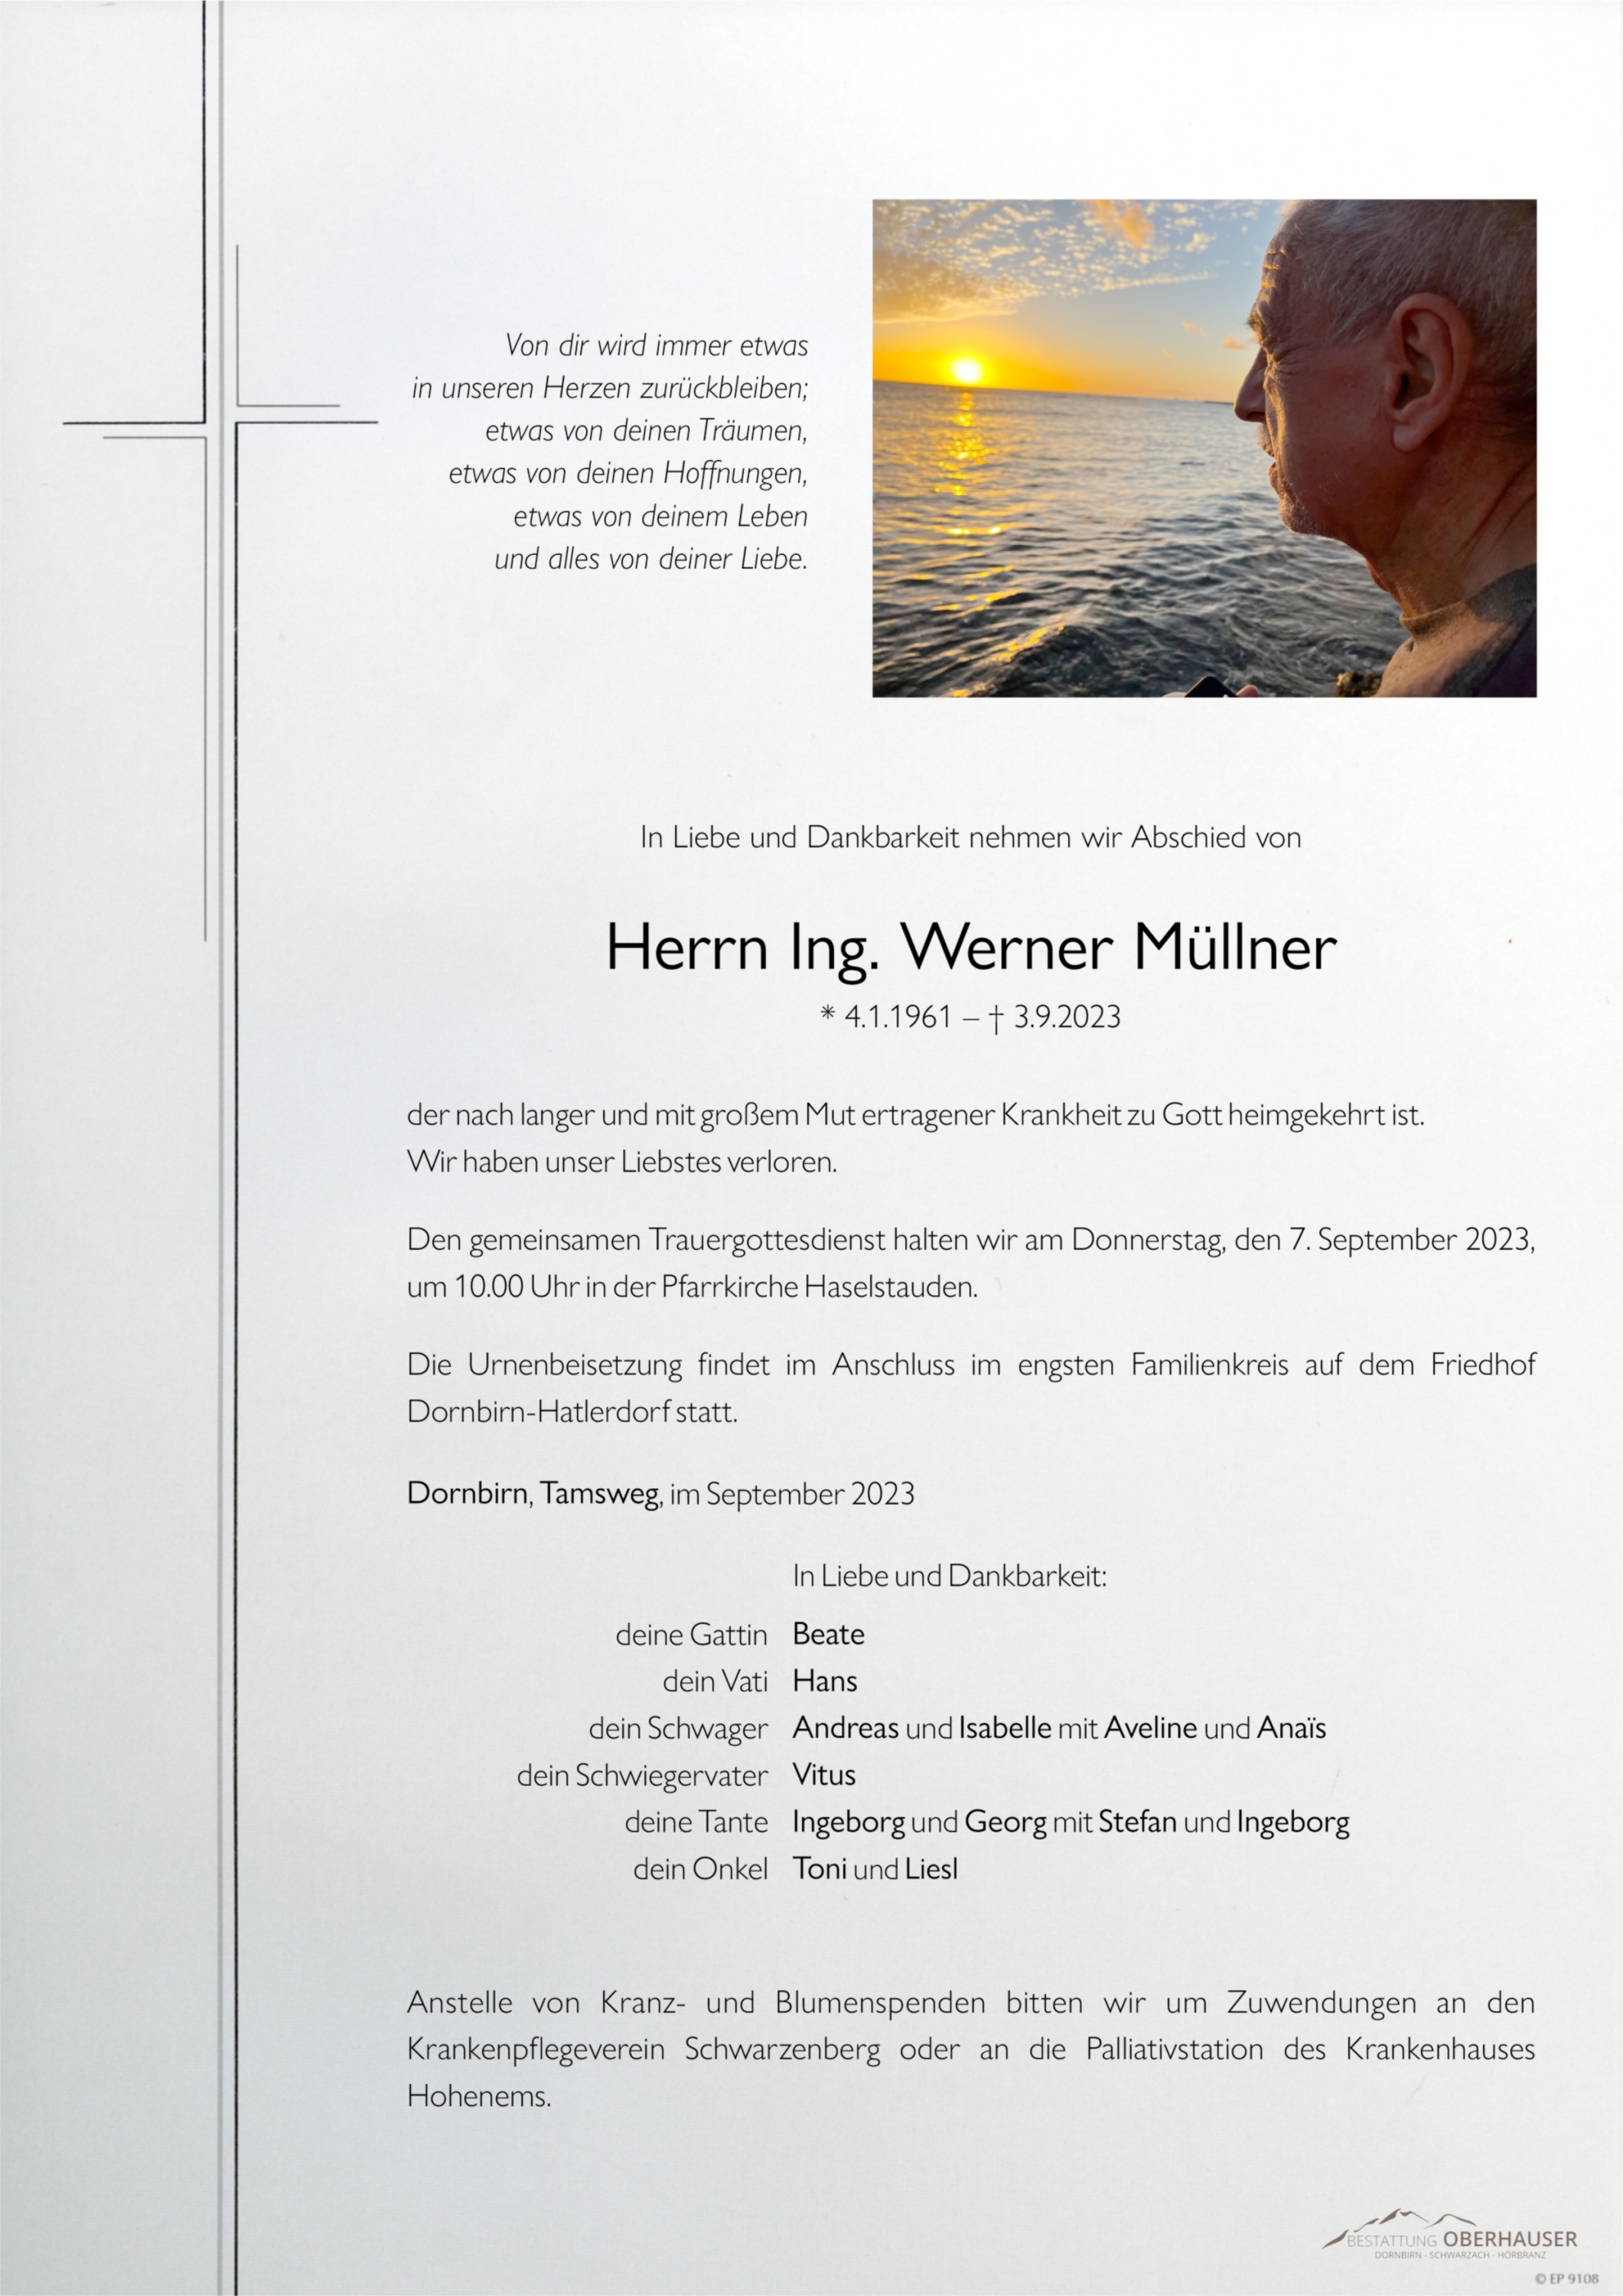 Ing. Werner Müllner